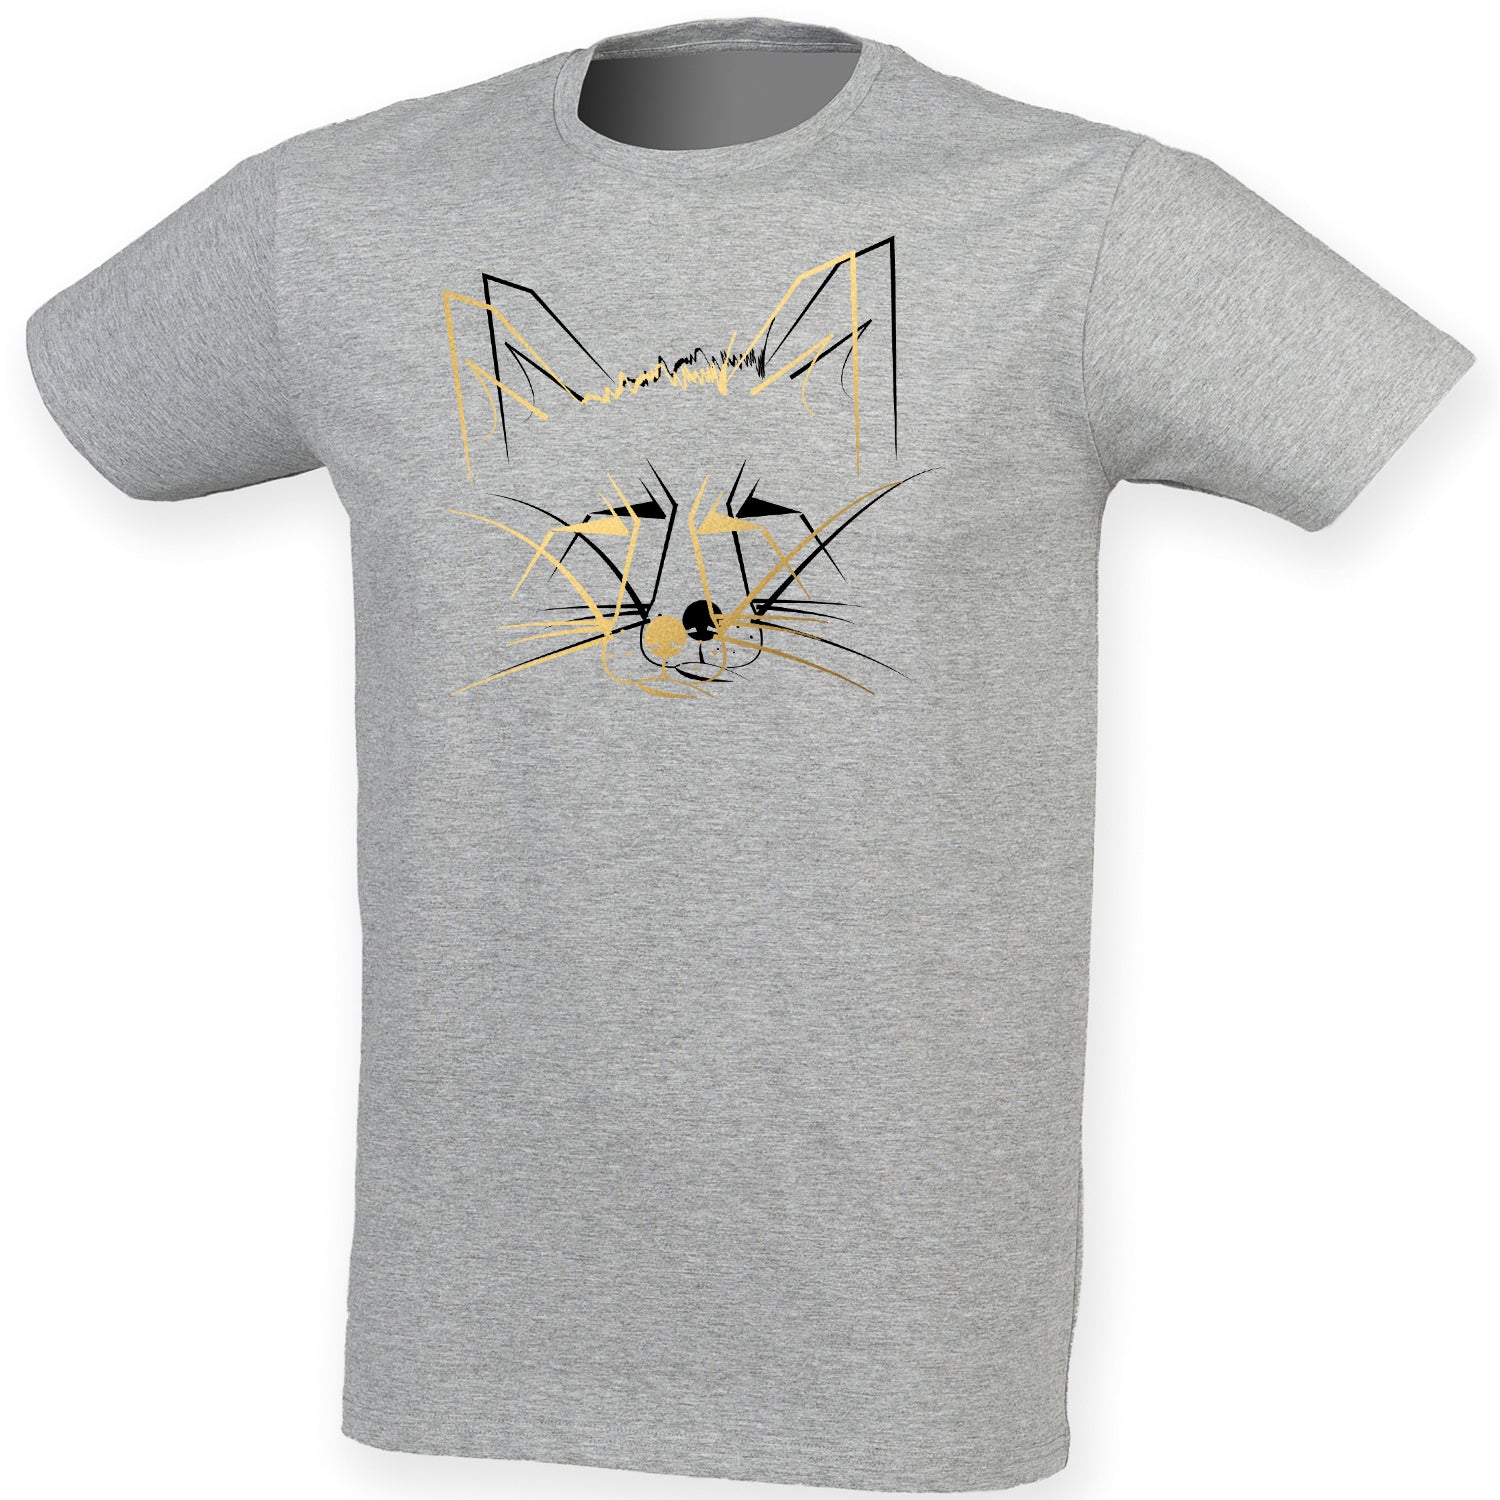 Golden fox men t-shirt